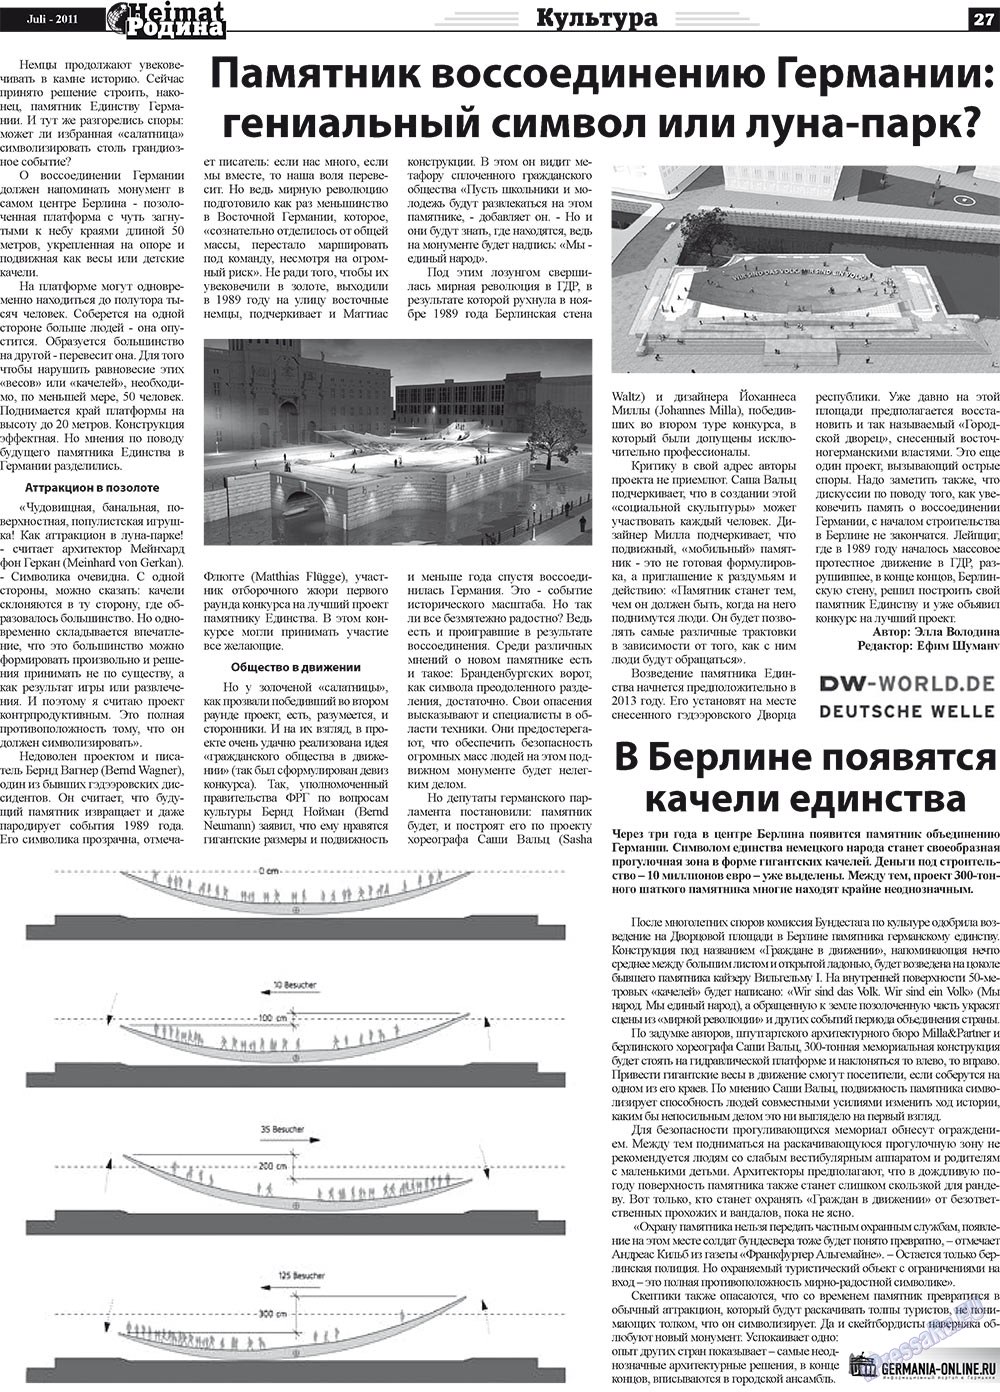 Heimat-Родина (газета). 2011 год, номер 7, стр. 27